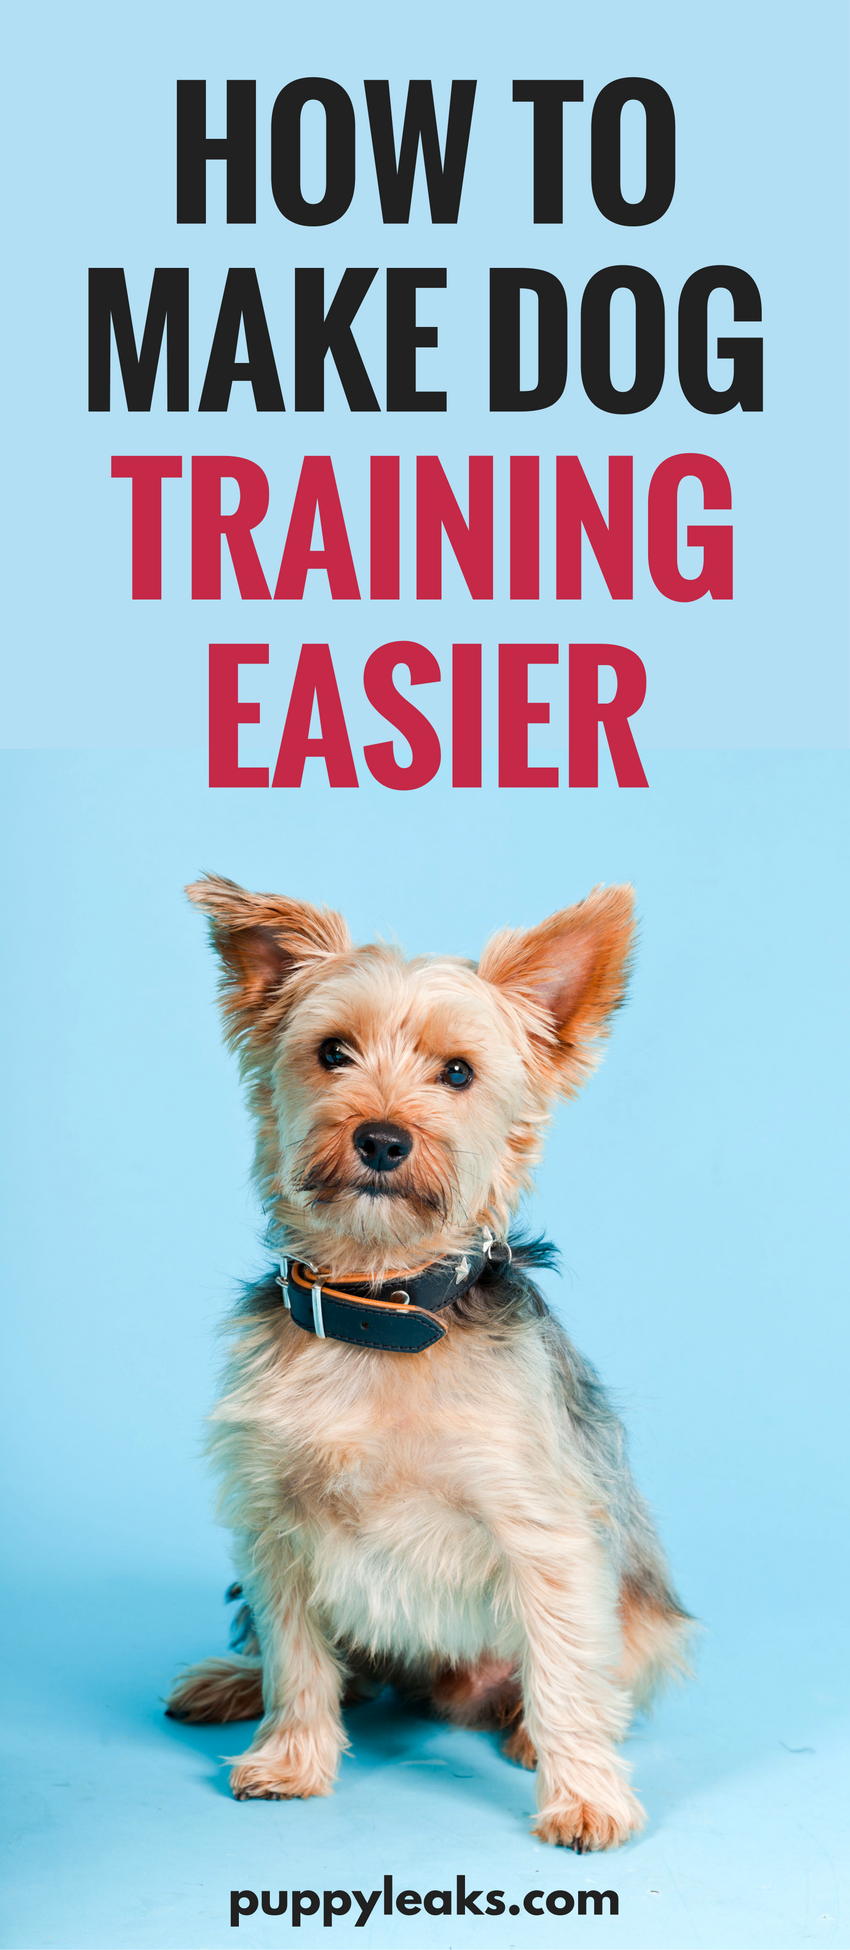 10 dicas que facilitam o treinamento de cães